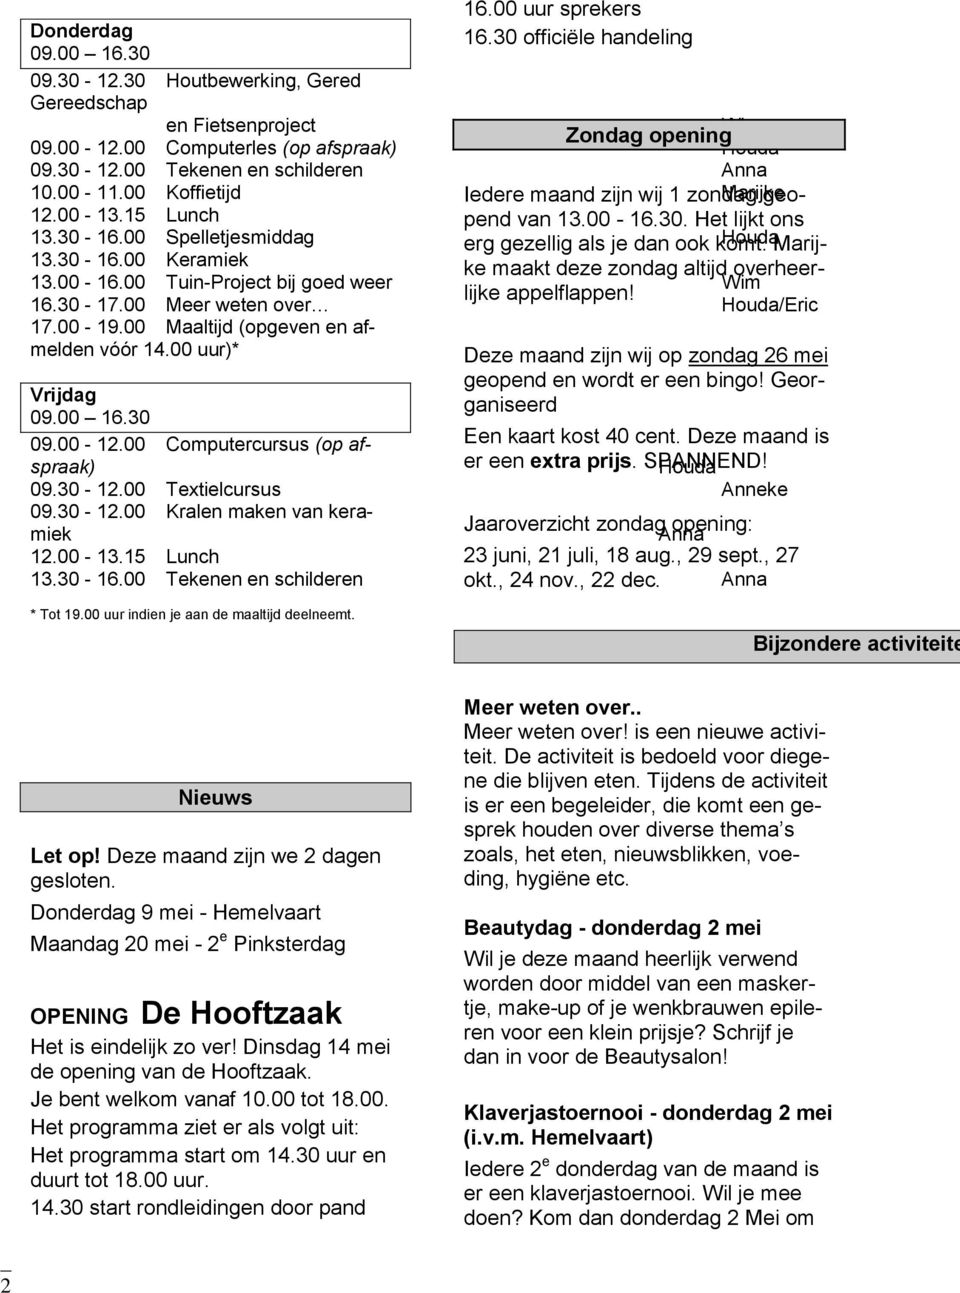 Houda Marijke maakt deze zondag altijd overheer- 13.30-16.00 Keramiek 13.00-16.00 Tuin-Project bij goed weer Wim lijke appelflappen! 16.30-17.00 Meer weten over Houda/Eric 17.00-19.